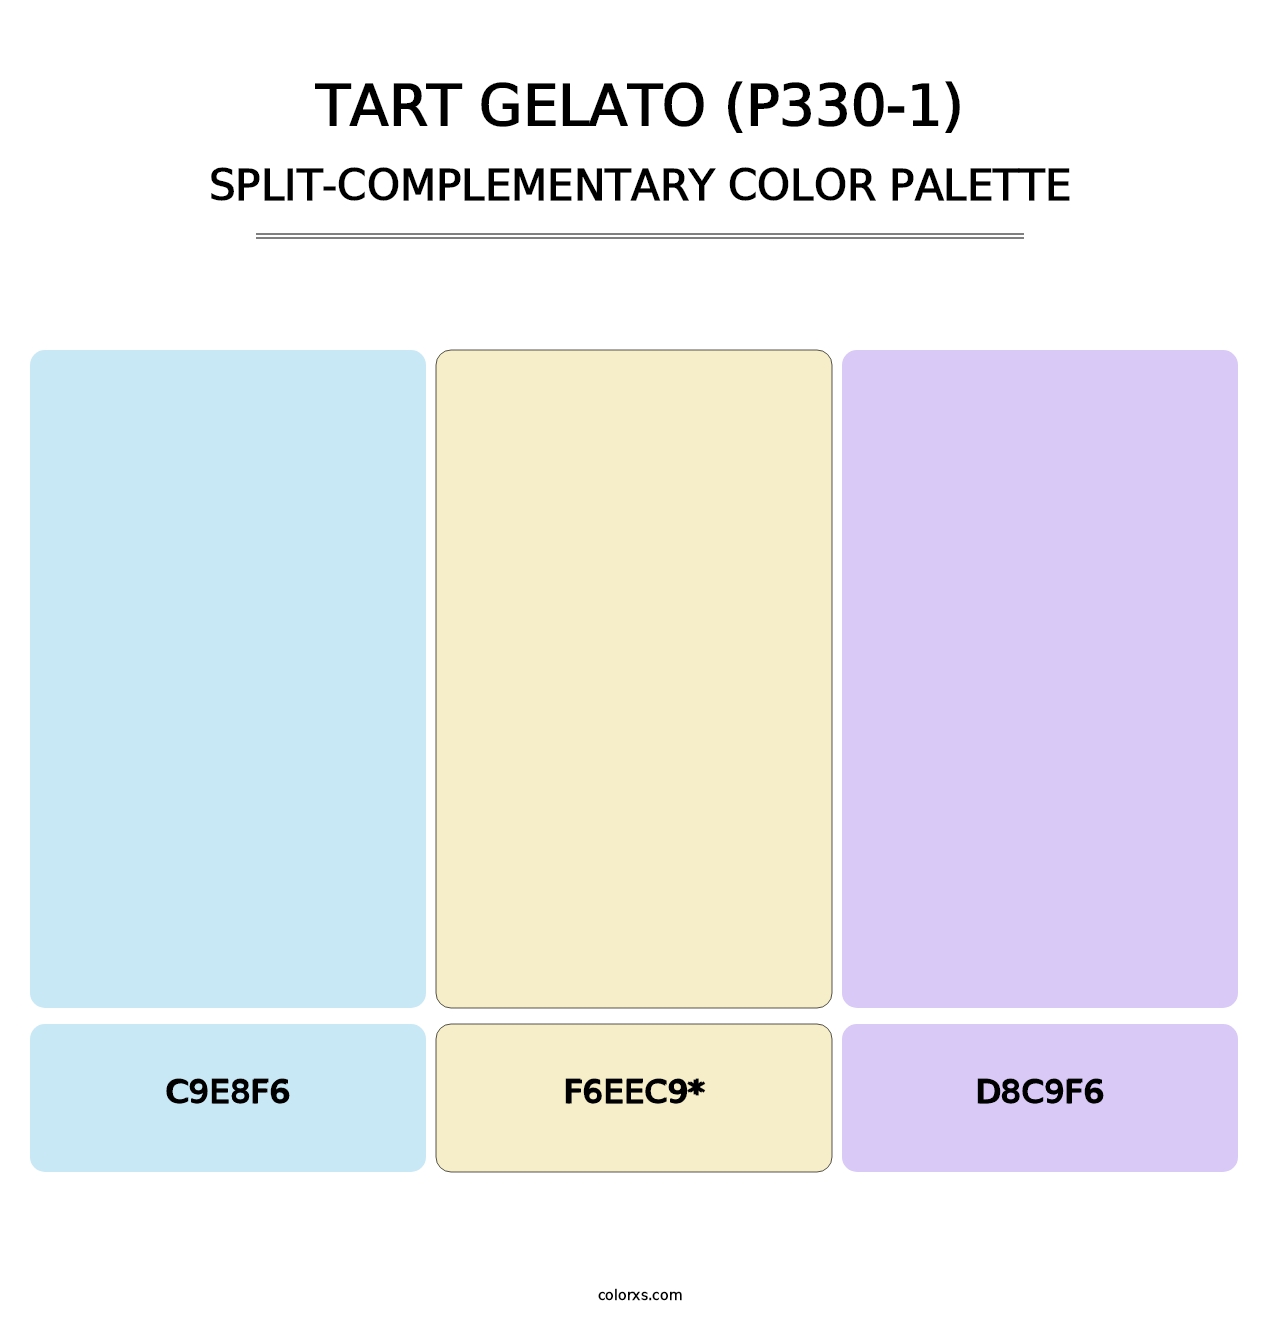 Tart Gelato (P330-1) - Split-Complementary Color Palette